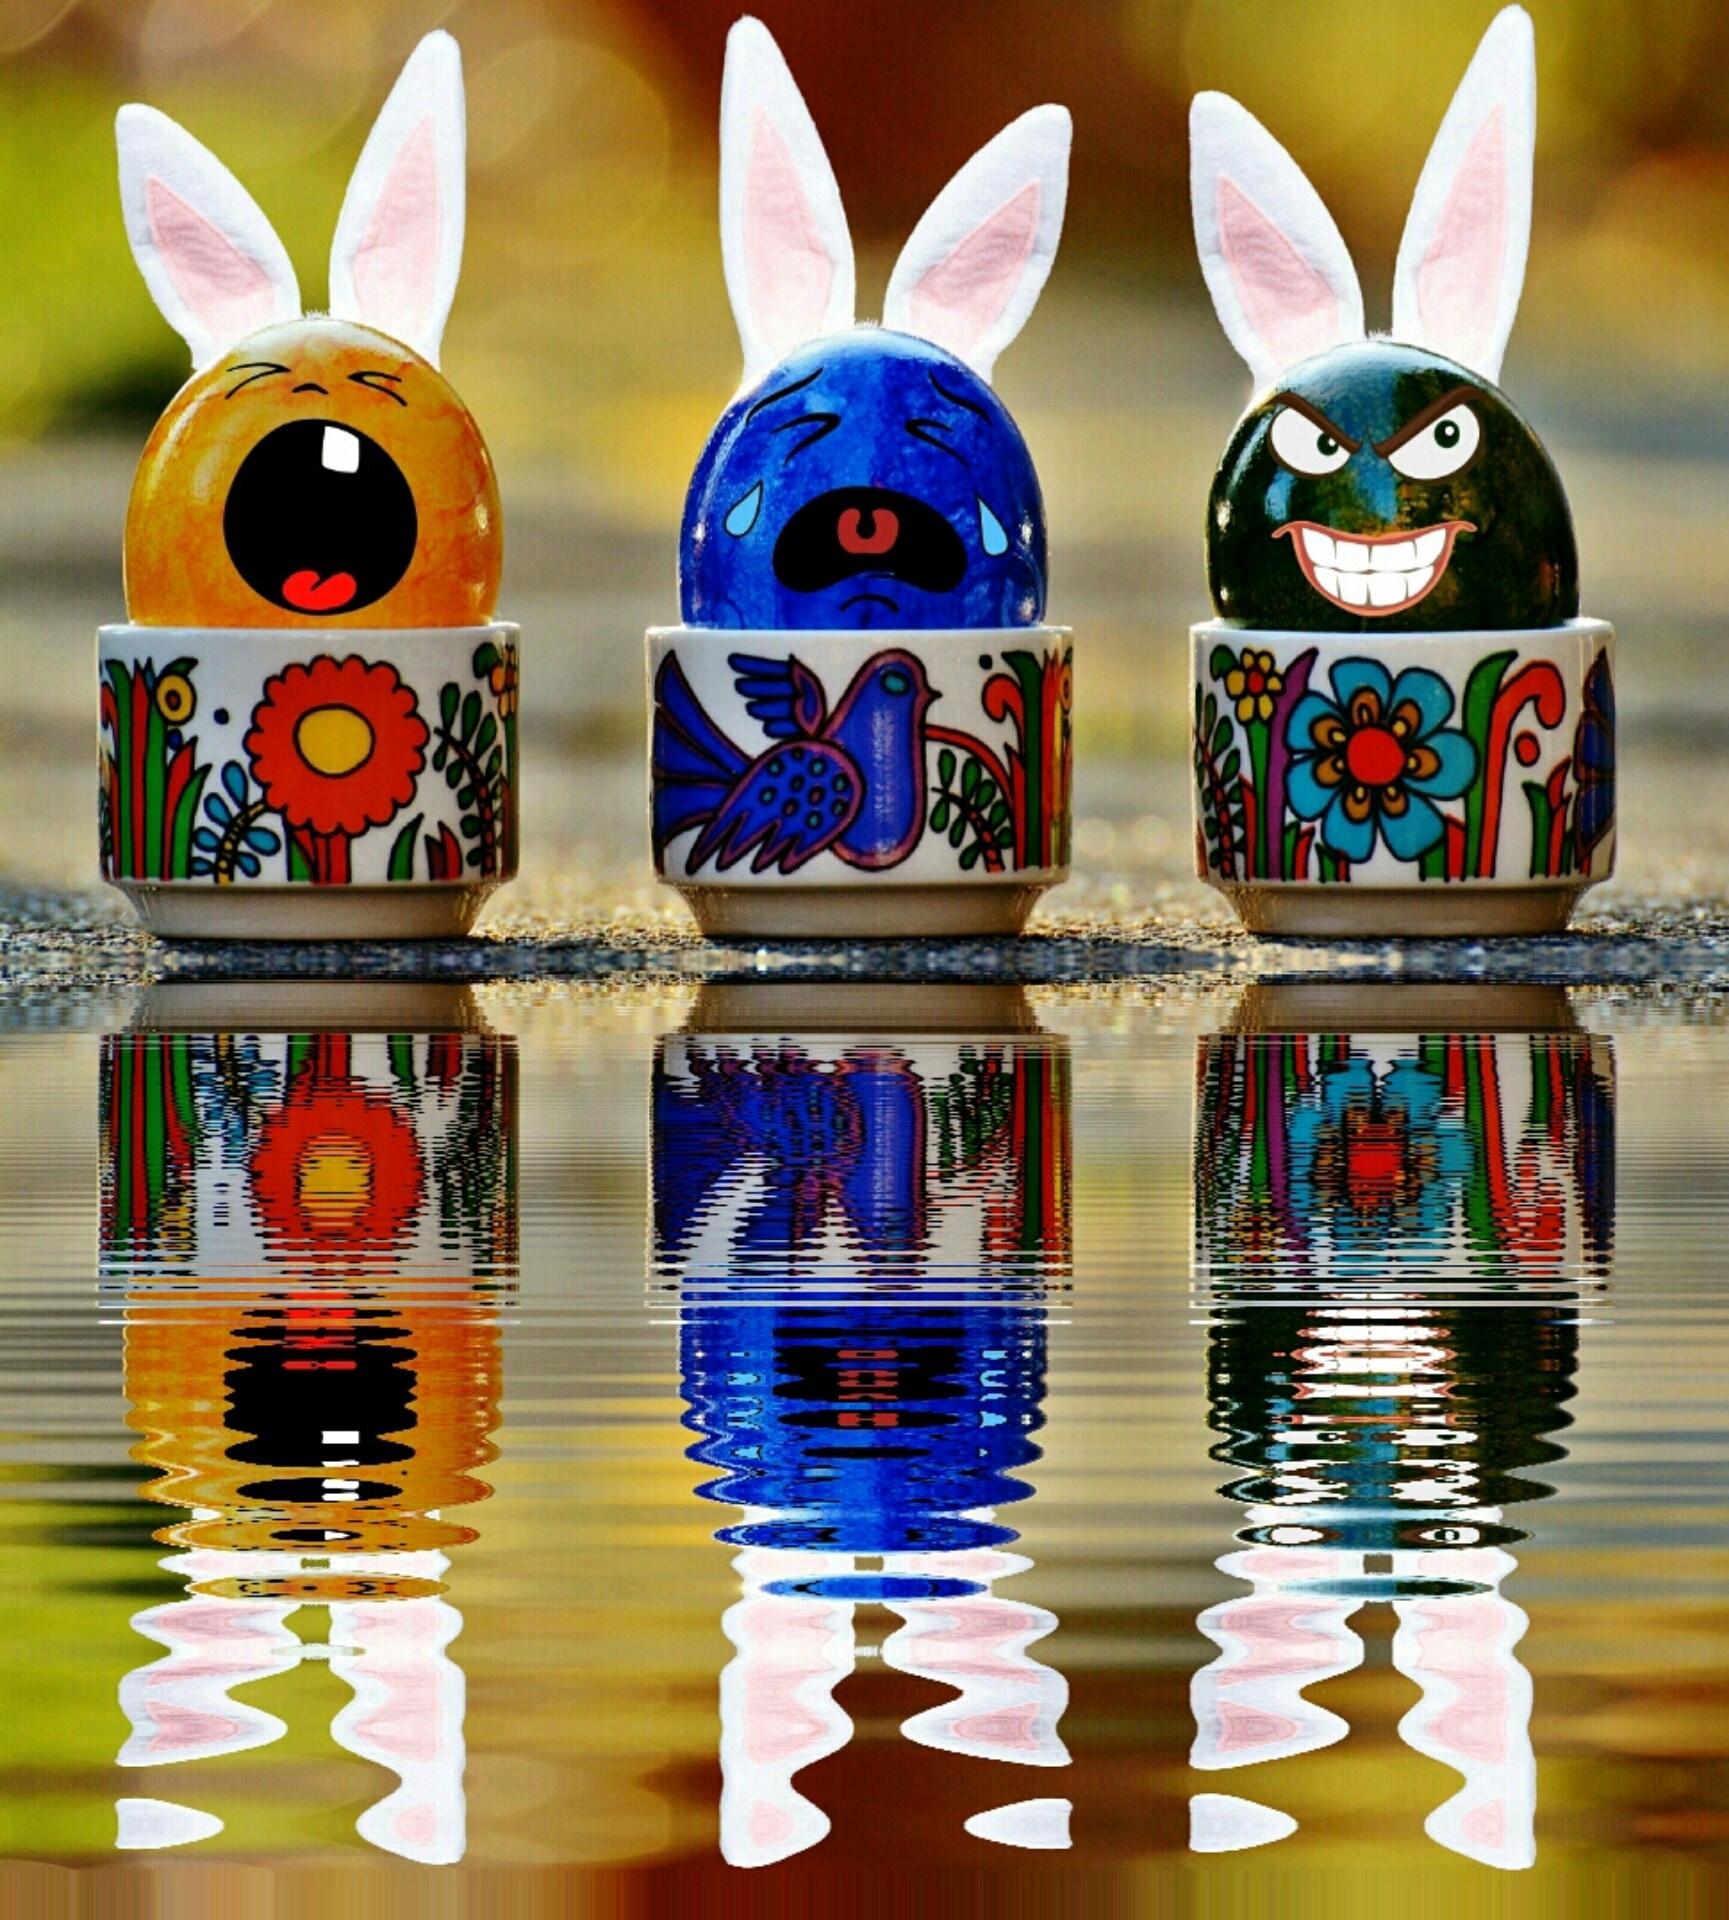 3 ceramic rabbit decors